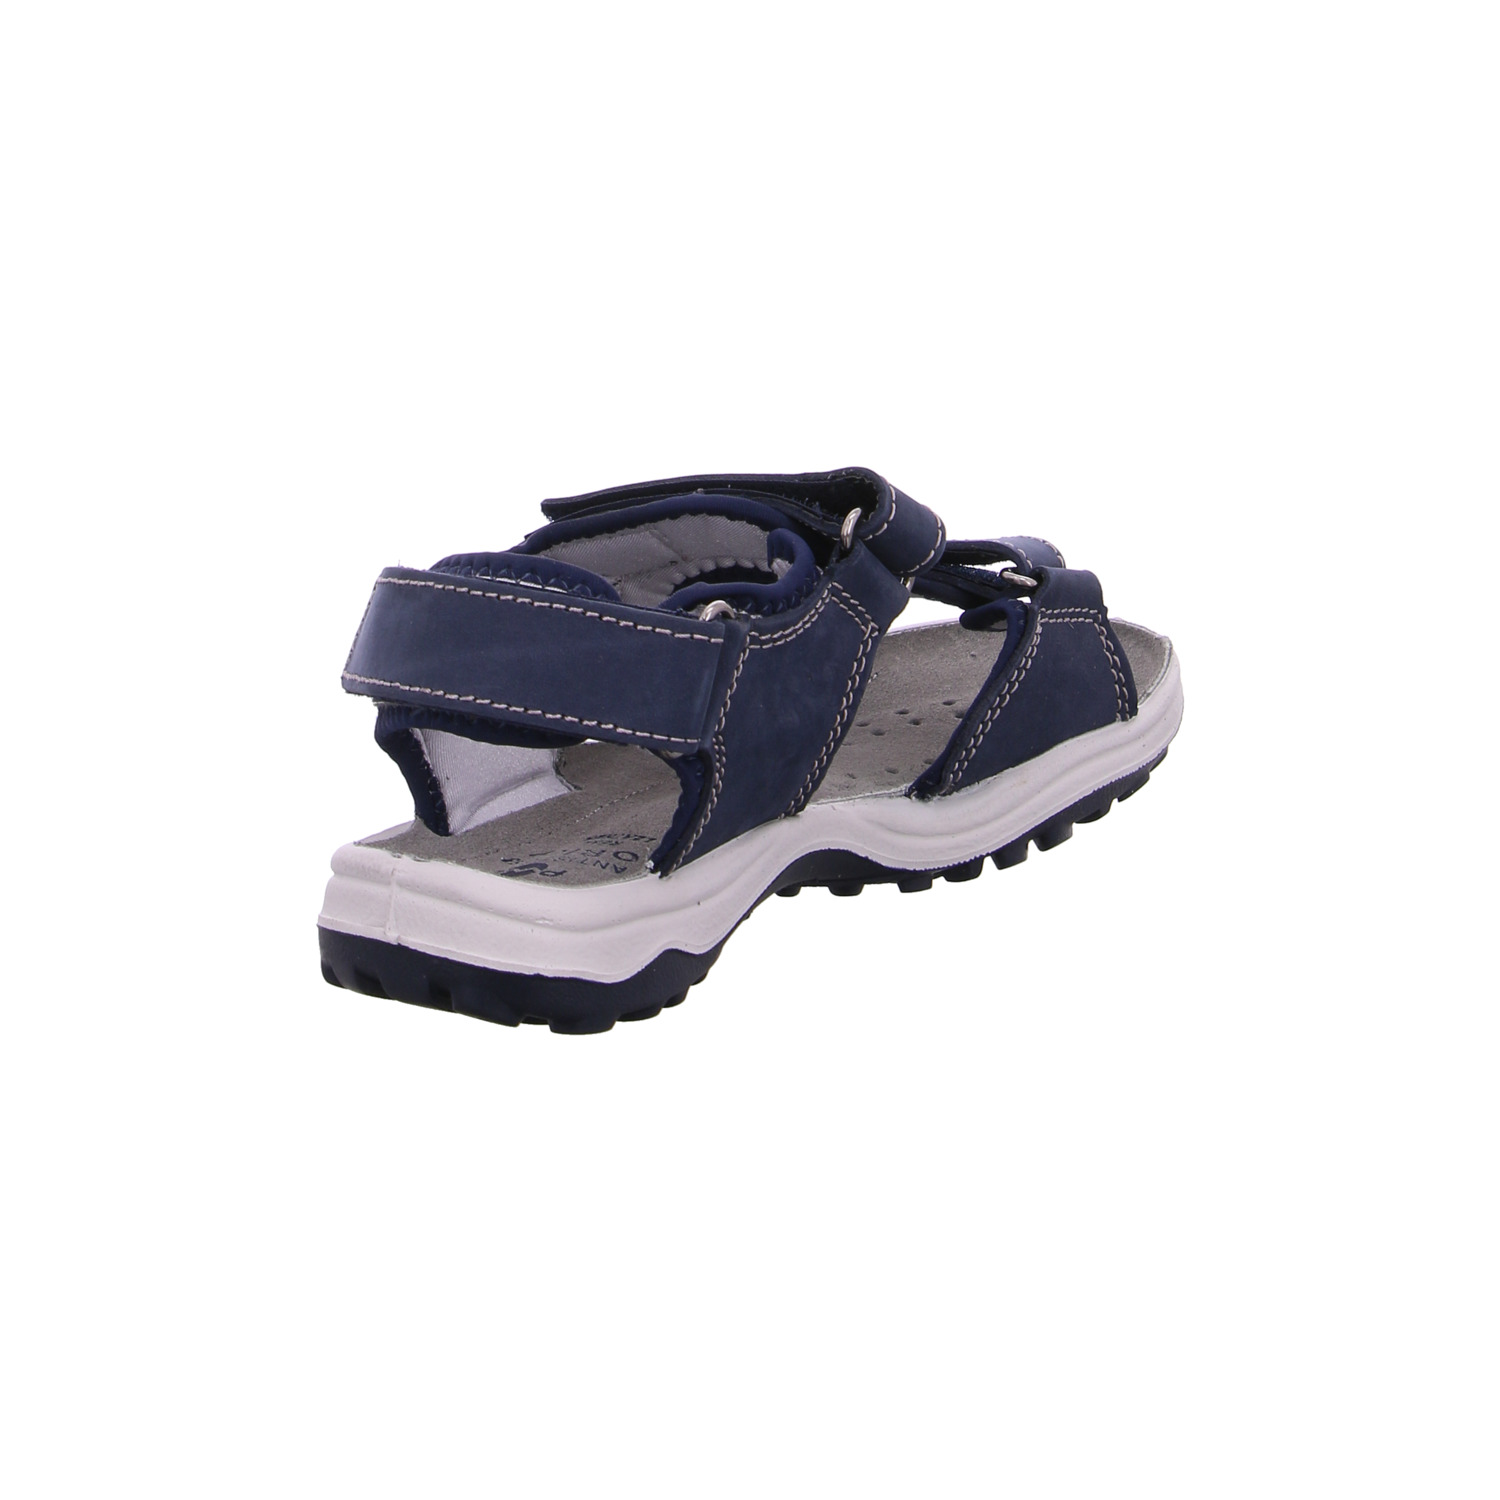 orion-kinder-sandaletten-jungen-blau-122544-28